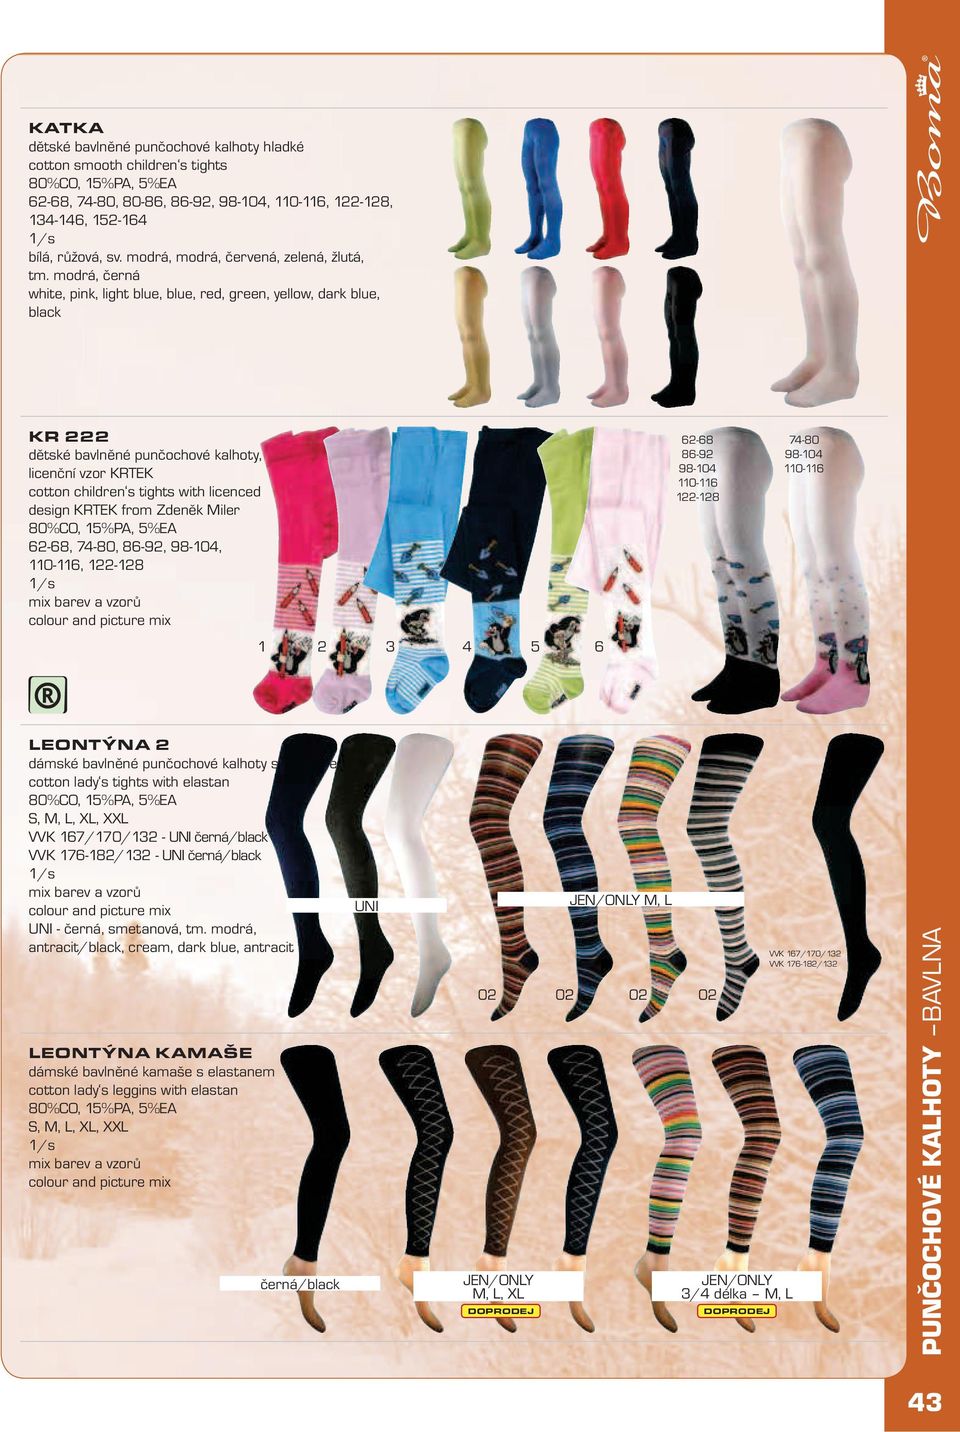 DOSPĚLÉ FROTÉ KOSKANA. dámské vzorované froté ponožky. příjemný omak  patterned terry ladys socks, warm-pleasent touch 80%CO, 15%PA, 5%EA 23-25,  PDF Stažení zdarma